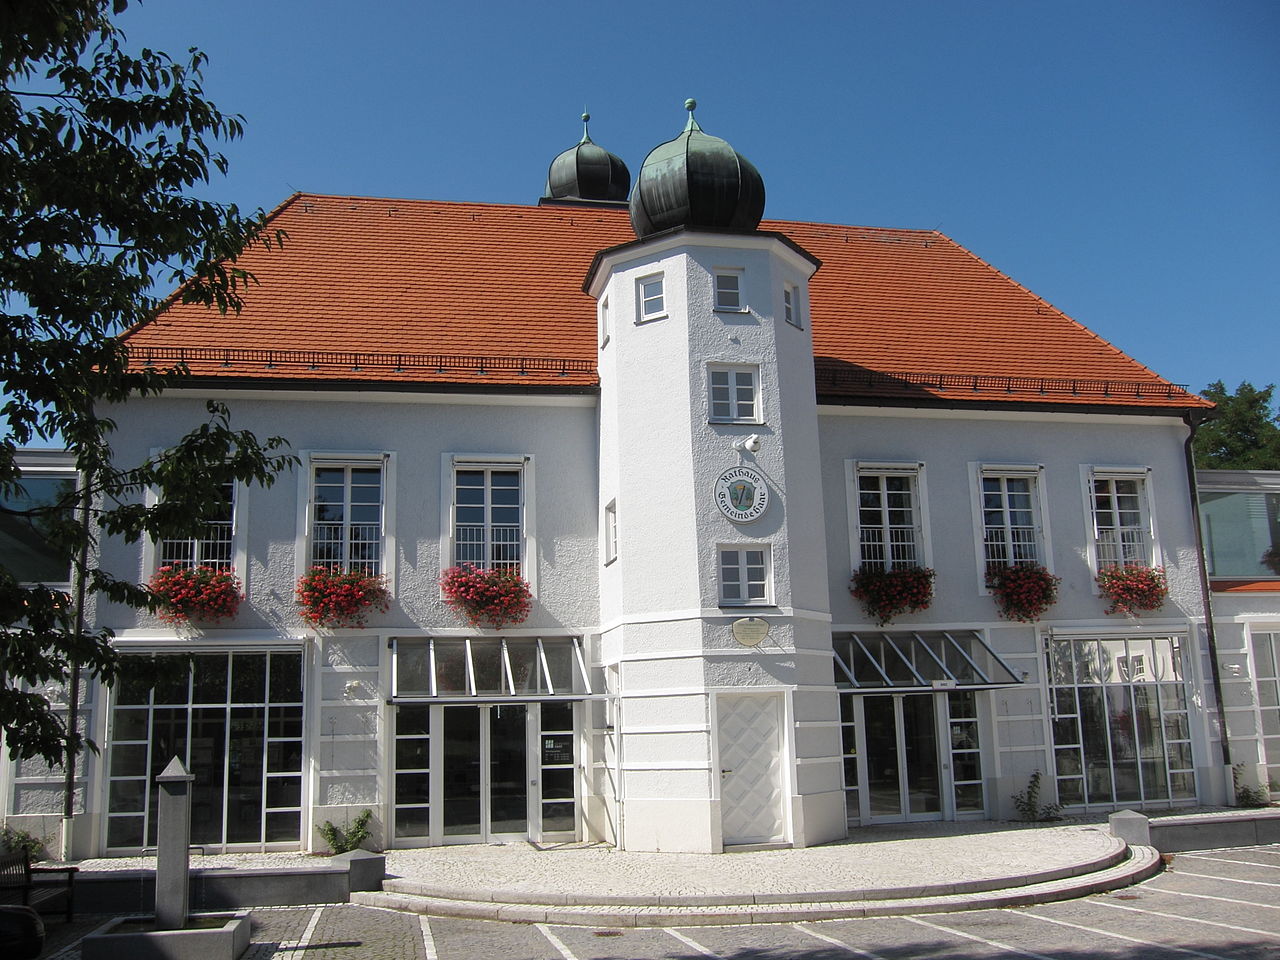 Haar's Town Hall